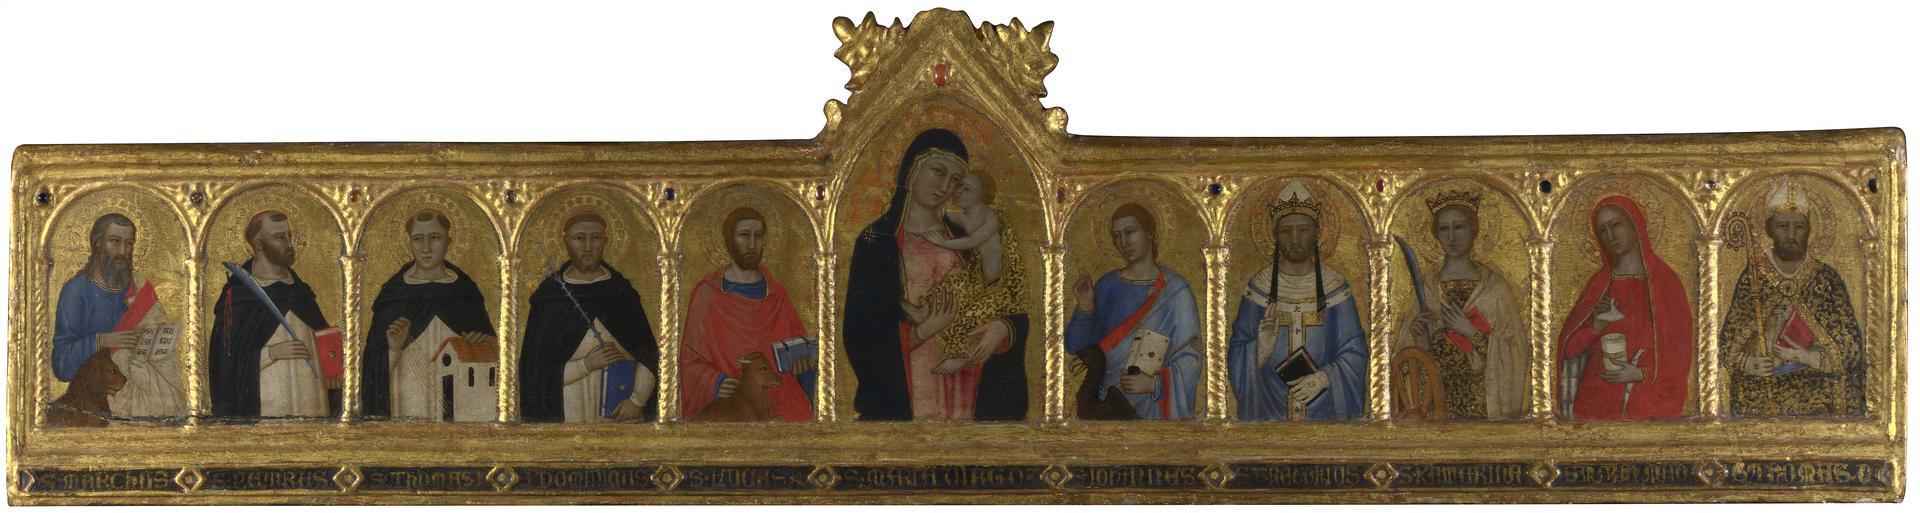 The Virgin and Child with Ten Saints by Andrea di Bonaiuto da Firenze